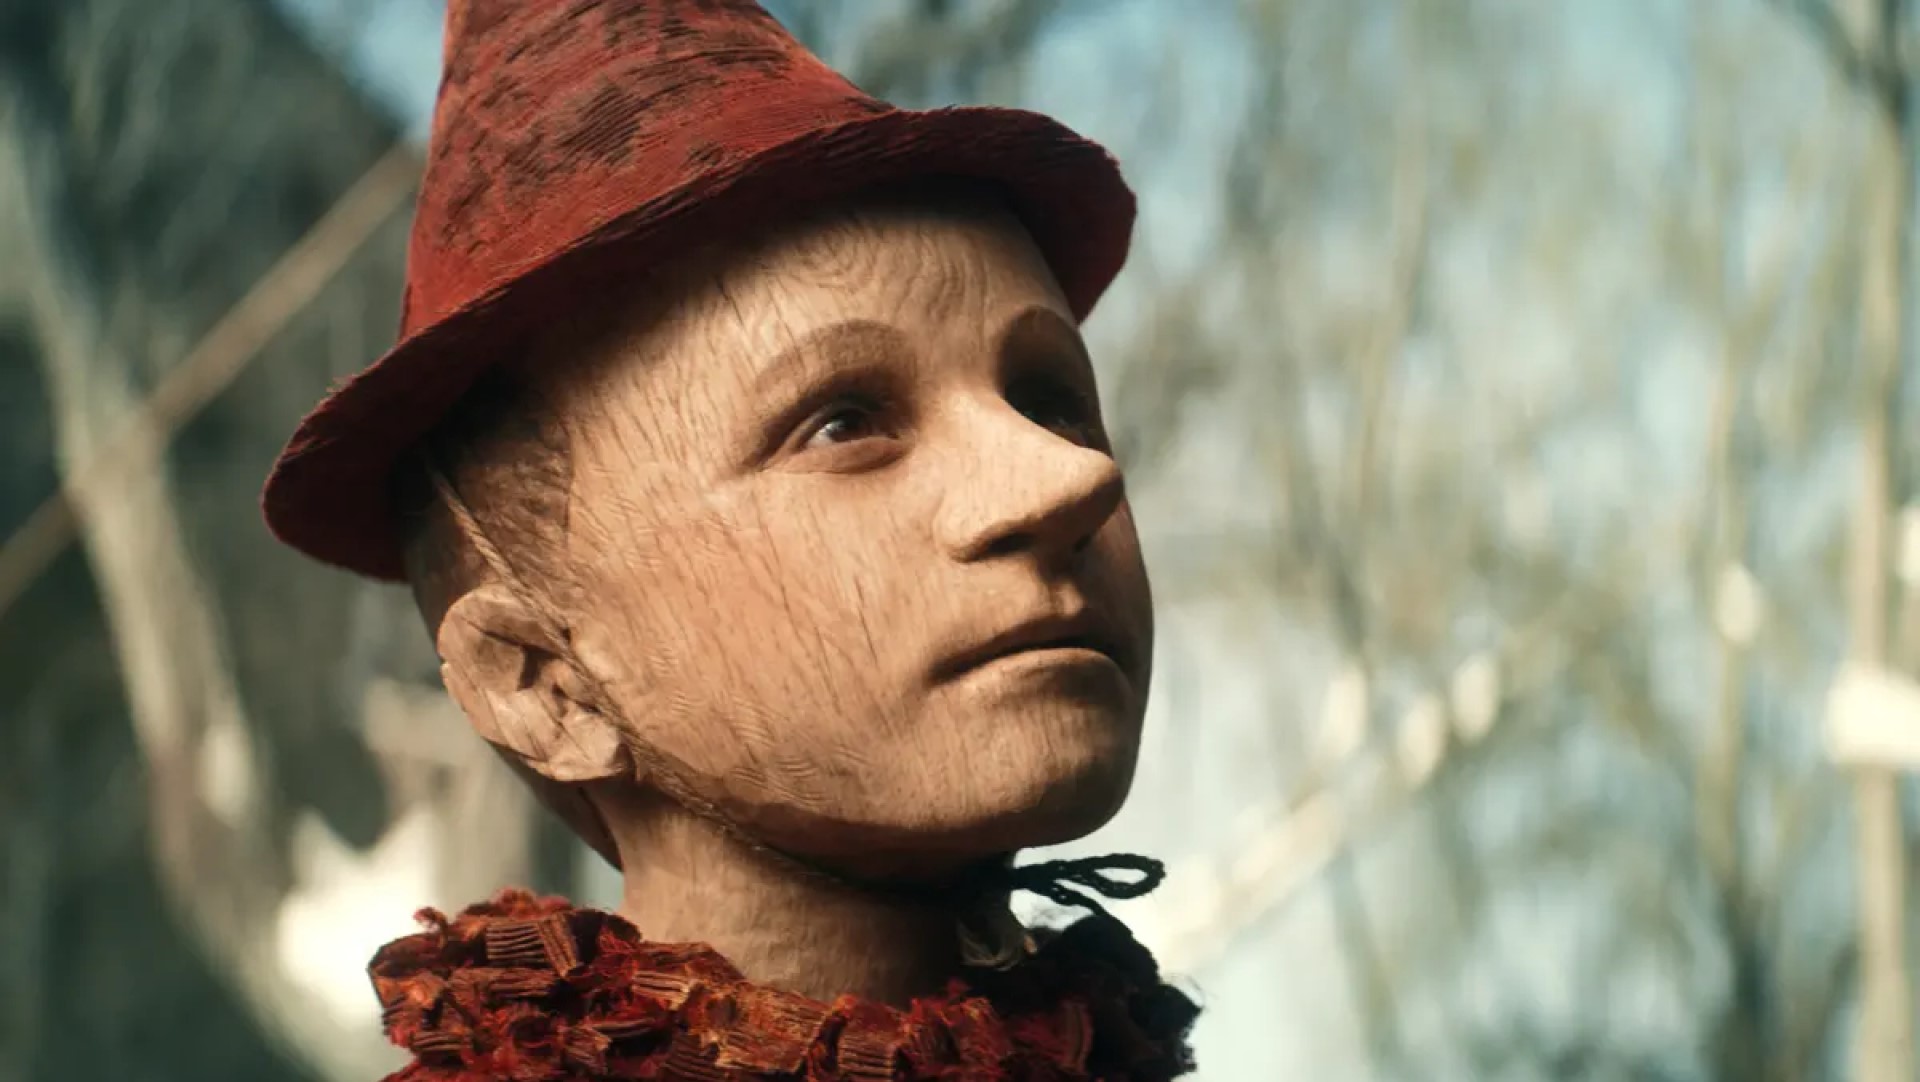 Pinocchio (2019) - Amazon Prime Video, June 19